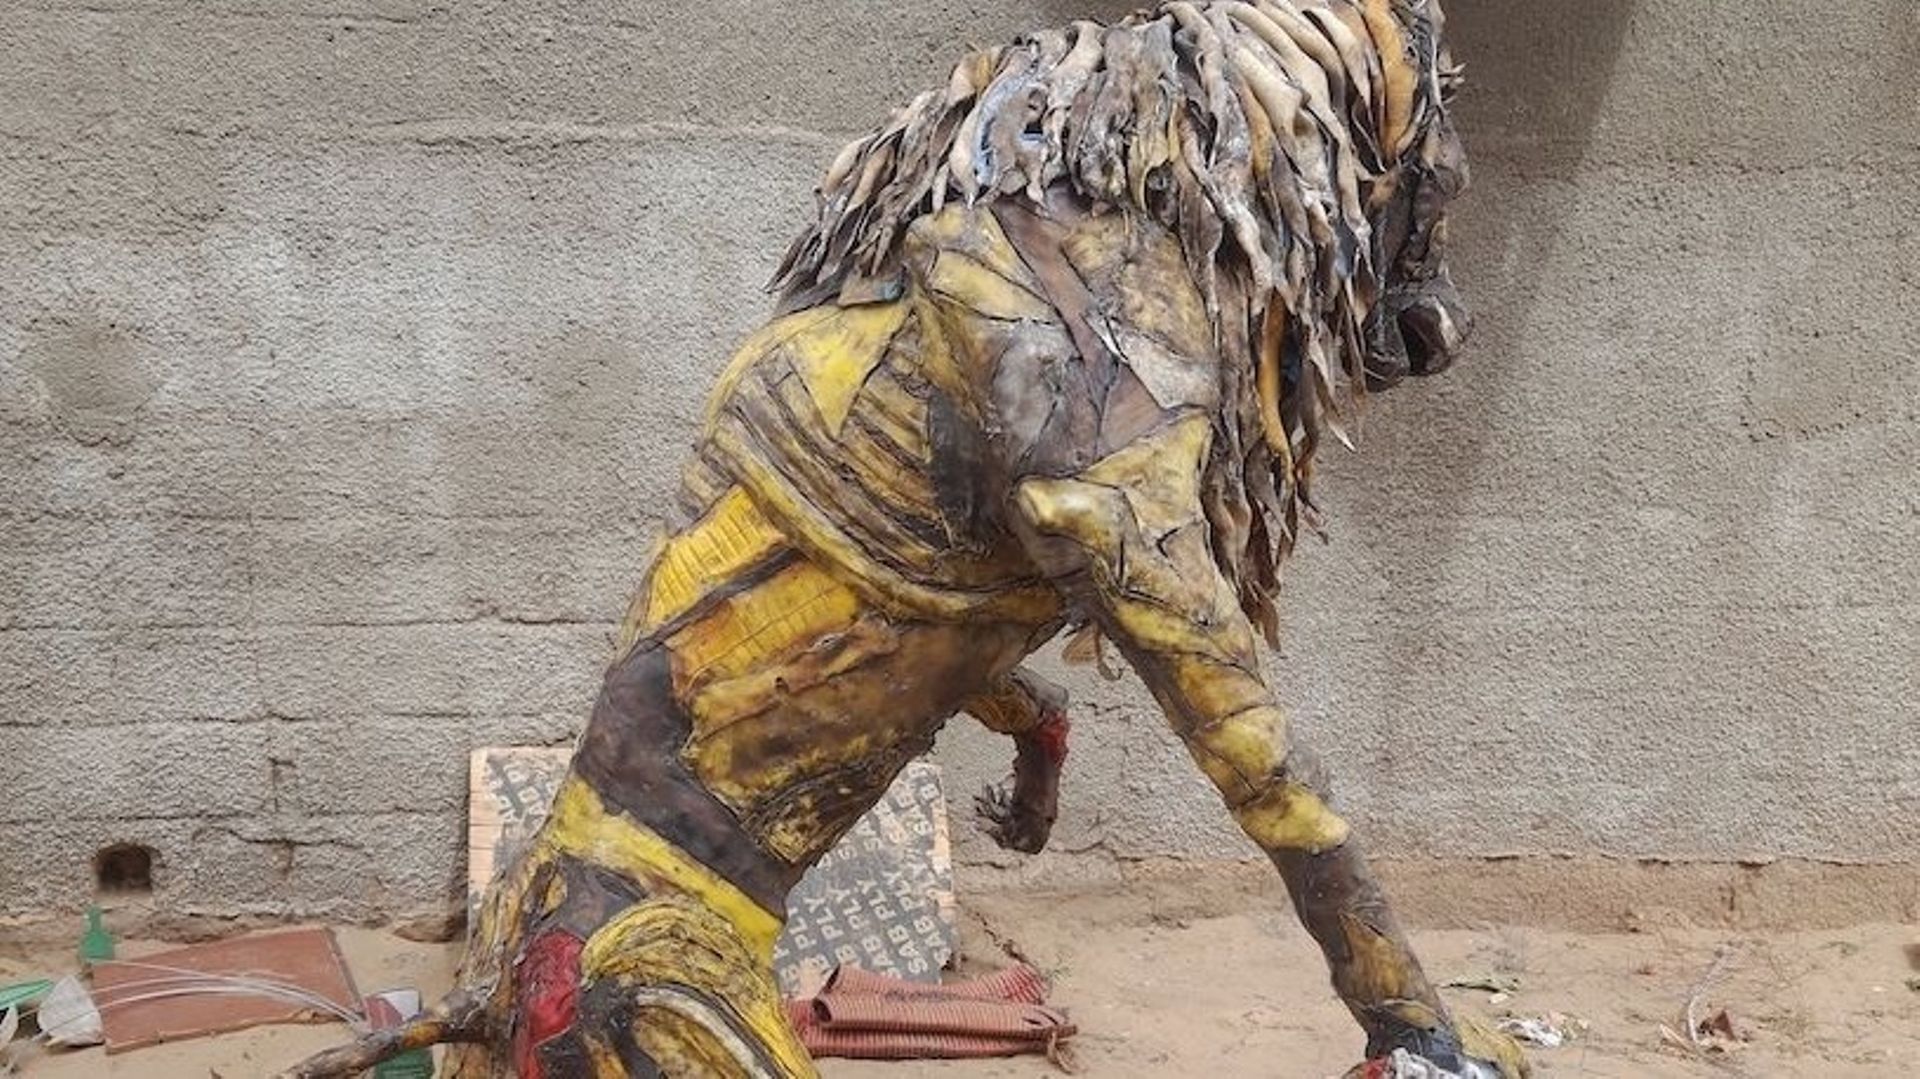 Sculpteur contemporain originaire de Guinée, Mamady Kanté est un passionné. Sa spécialité ? Les sculptures en plastiques recyclés ou en papier mâché. L’artiste s’attaque actuellement à une nouvelle œuvre : un lion géant entièrement composé de déchets plas